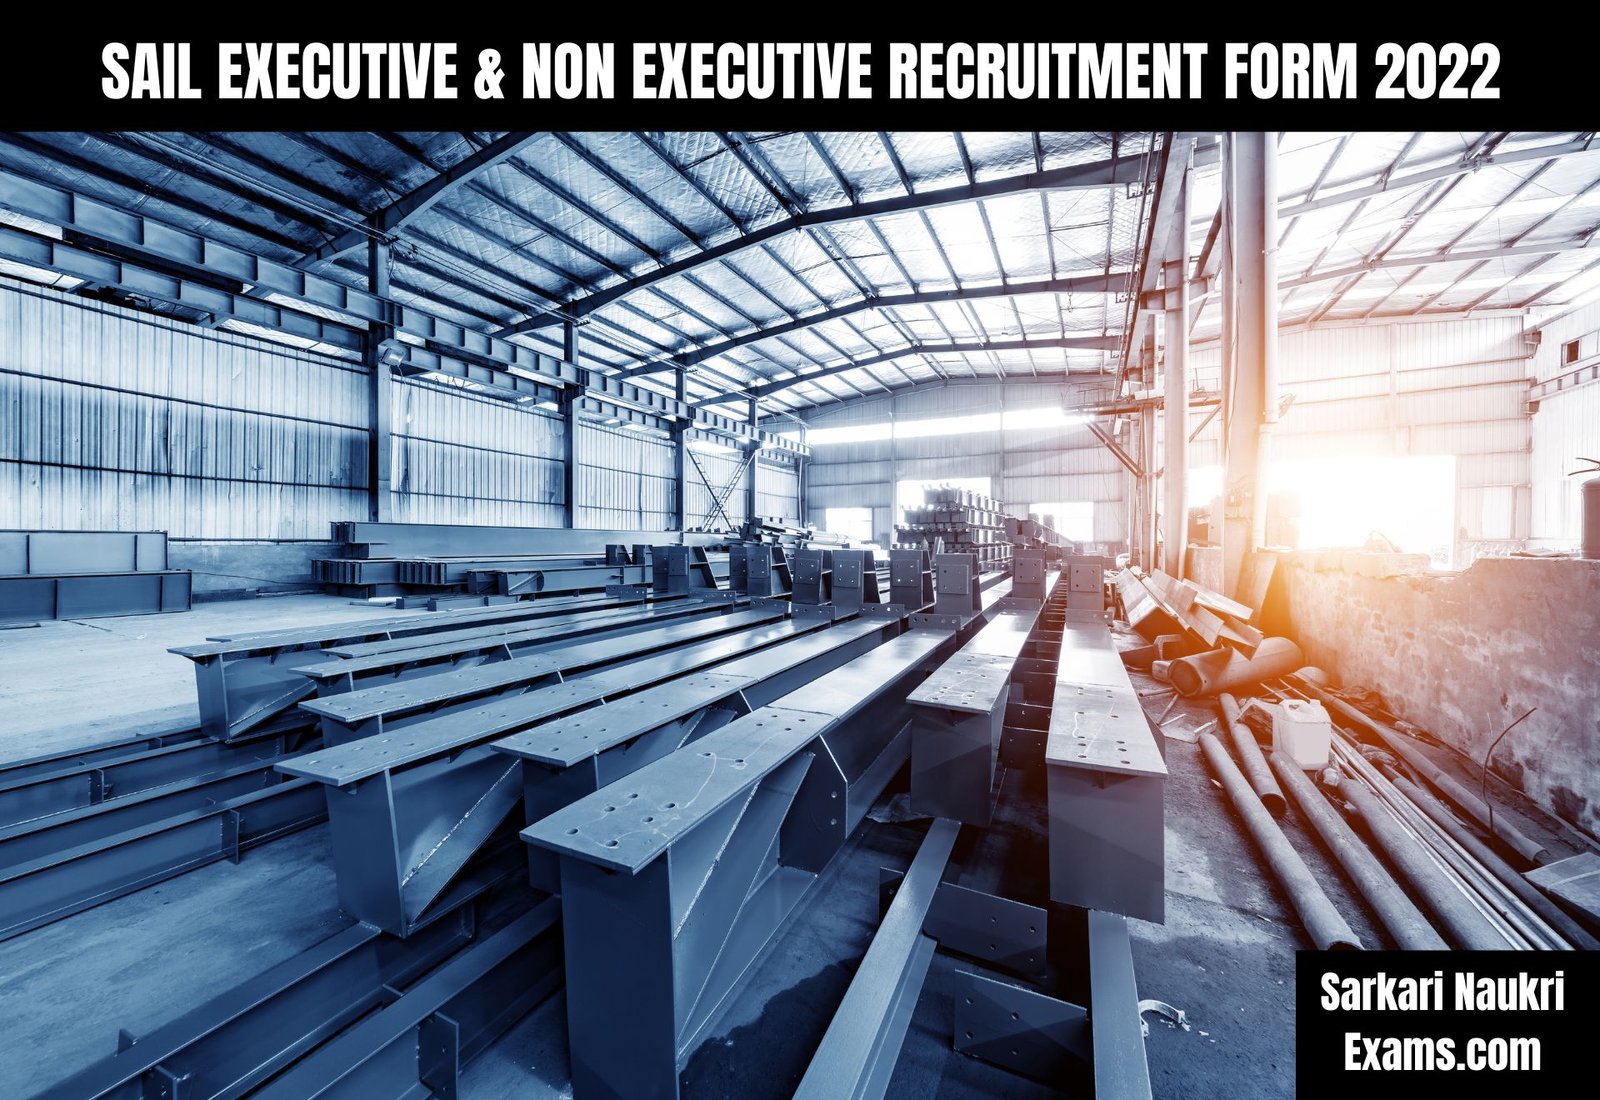 SAIL Executive & Non Executive Recruitment Form 2022 | Salary Up To 220000/-